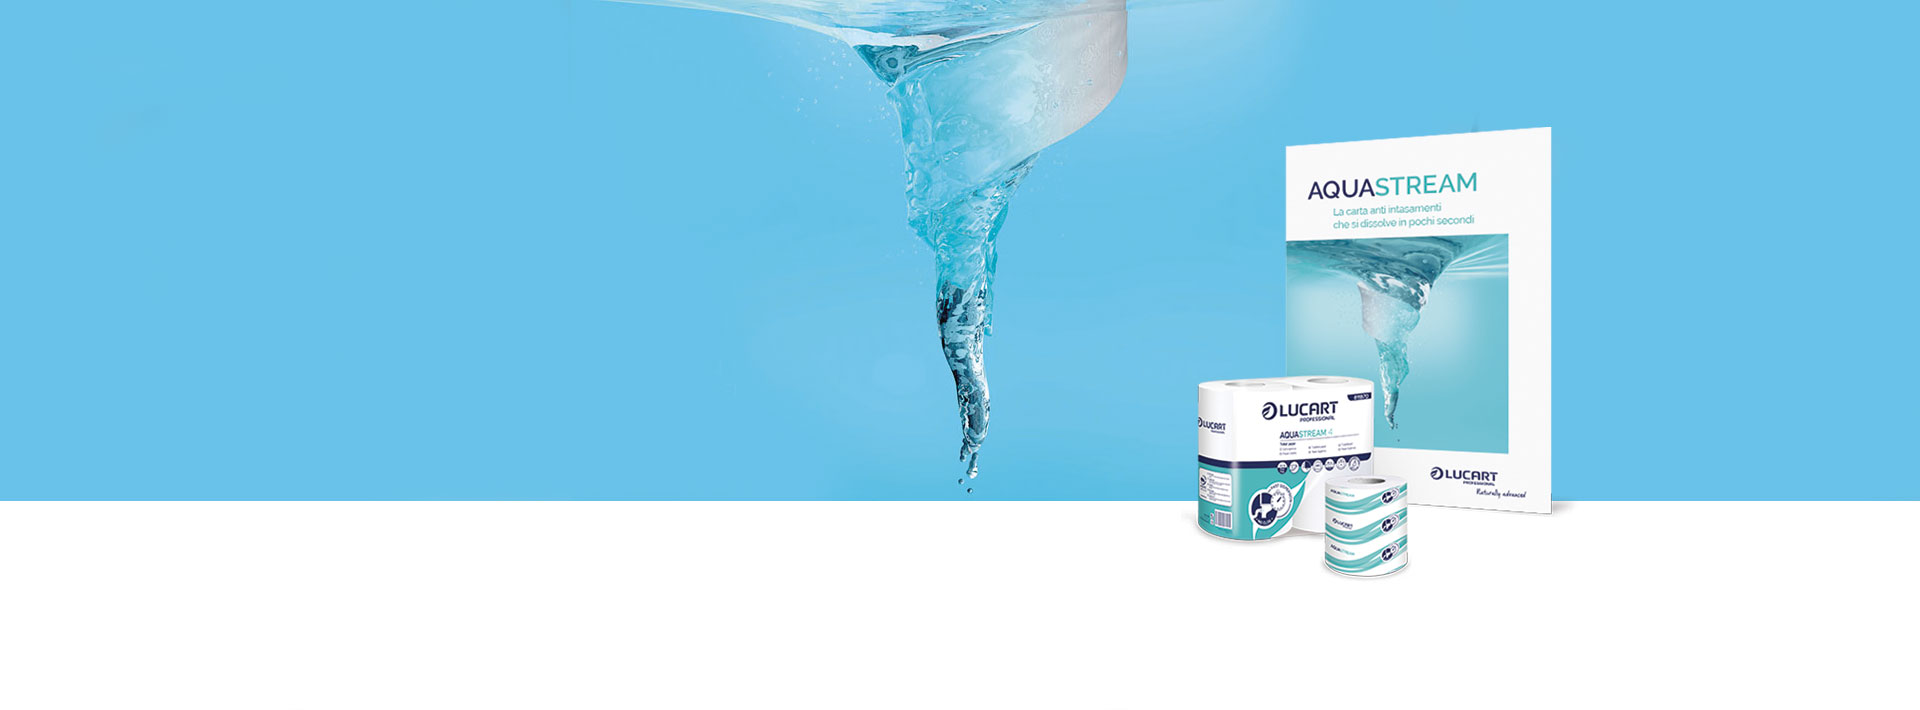 Aquastream - Vendita online prodotti per igiene